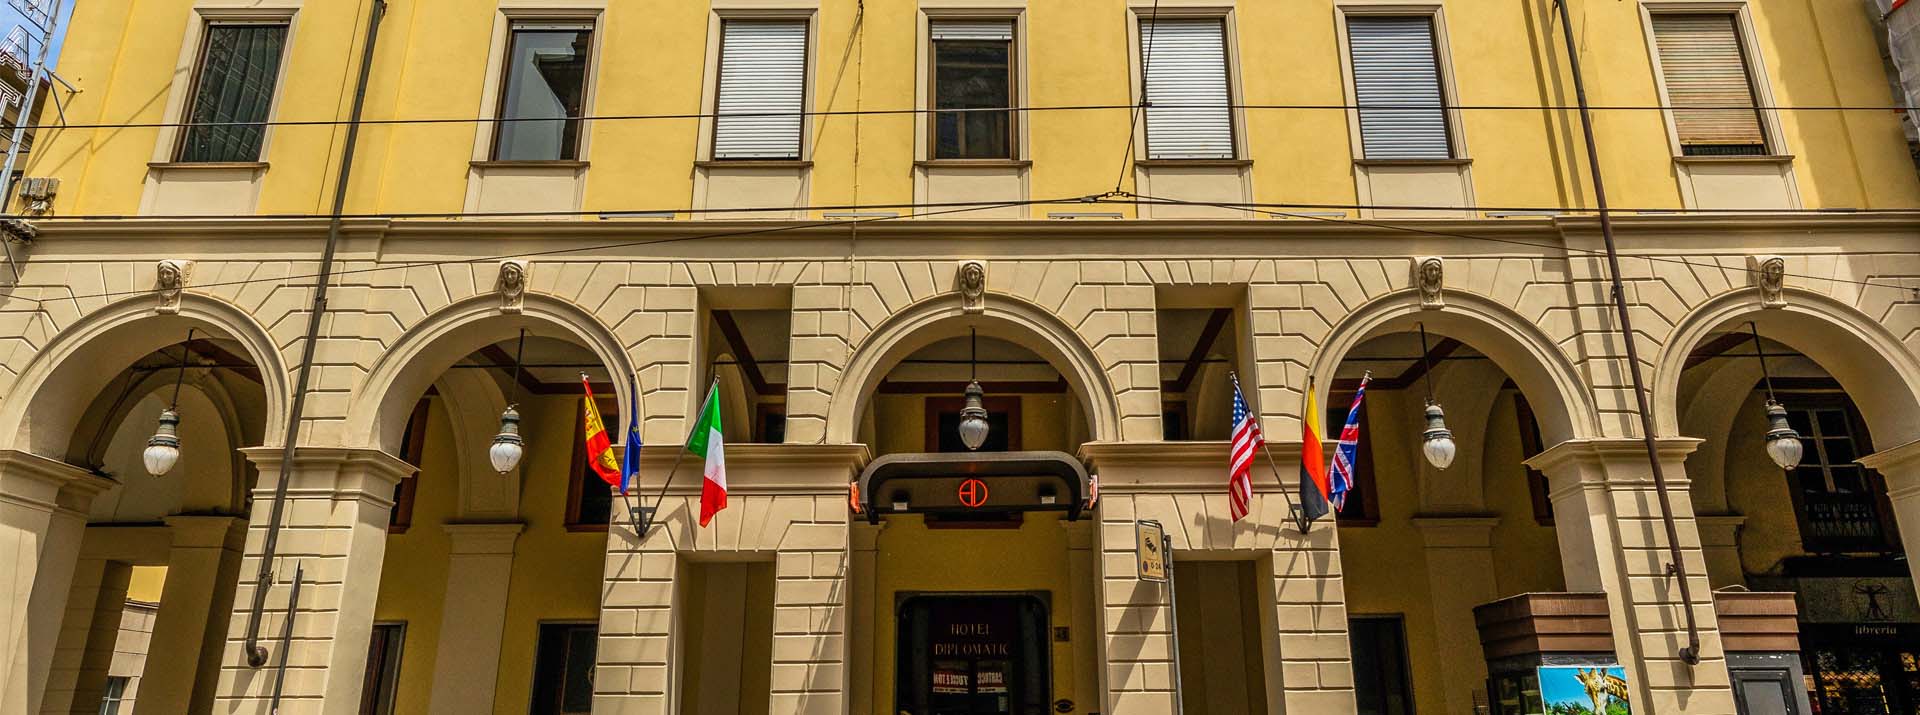 Riqualificazione dell'hotel Diplomatic di Torino a cura di Boero